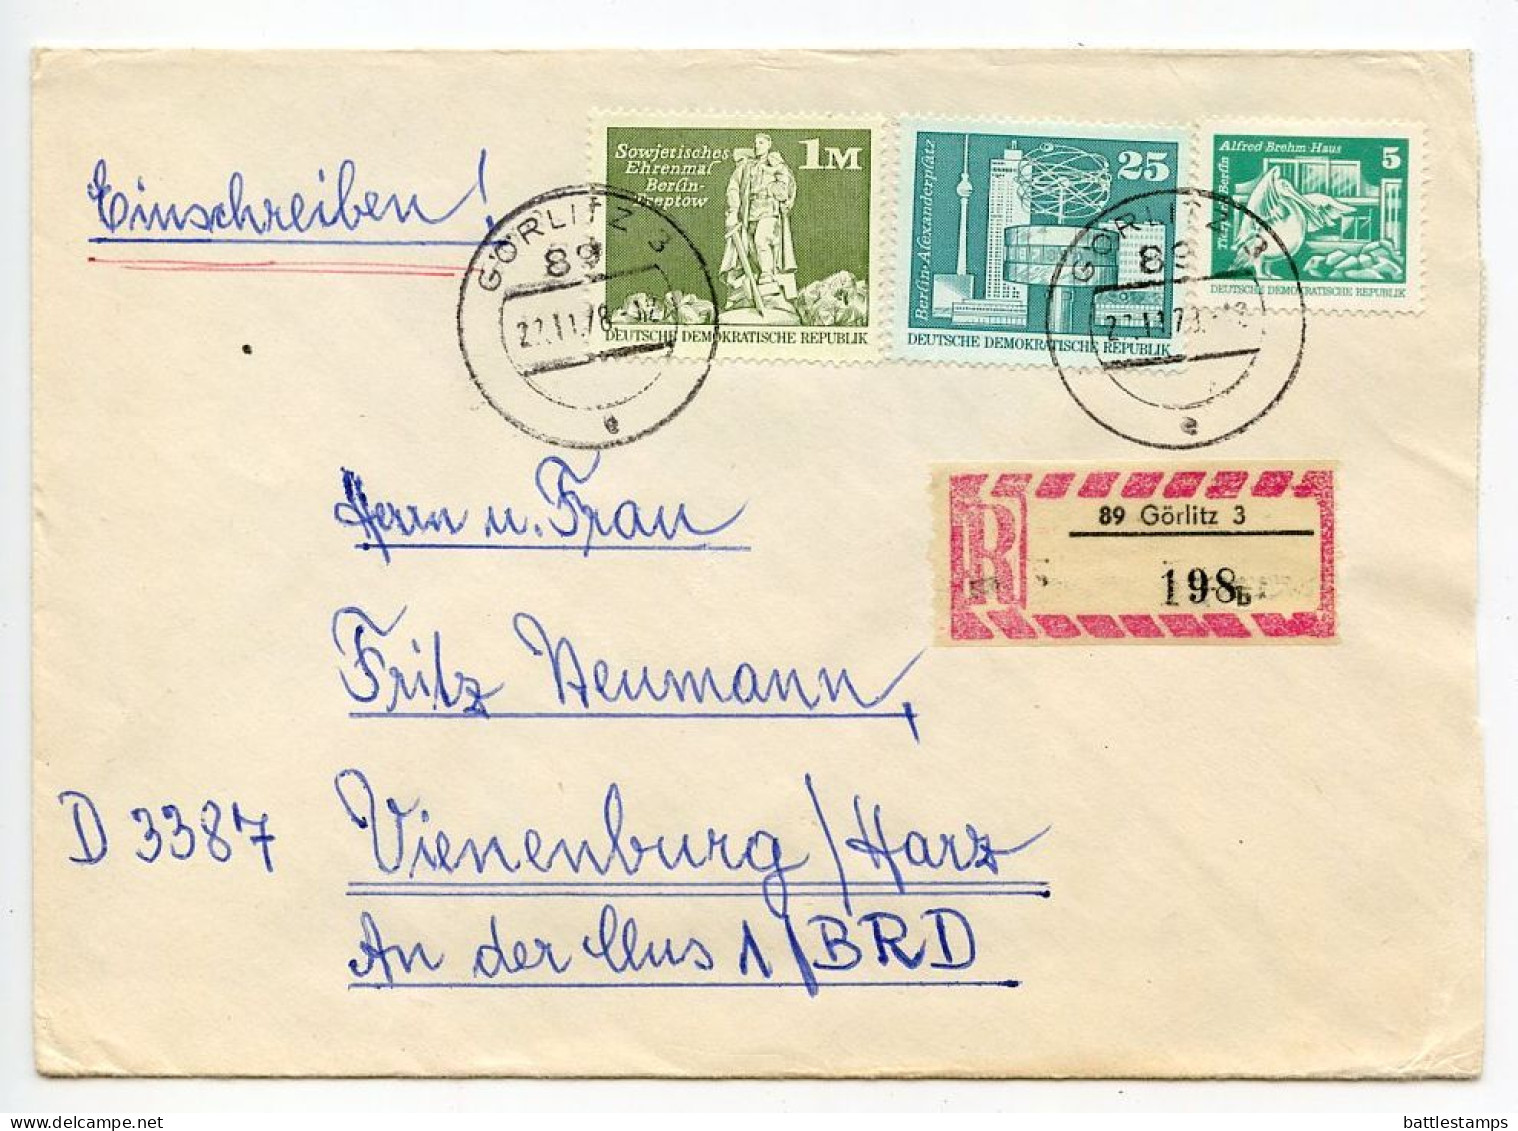 Germany East 1978 Registered Cover; Görlitz To Vienenburg; Mix Of Stamps; Tauschsendung Exchange Control Label - Briefe U. Dokumente